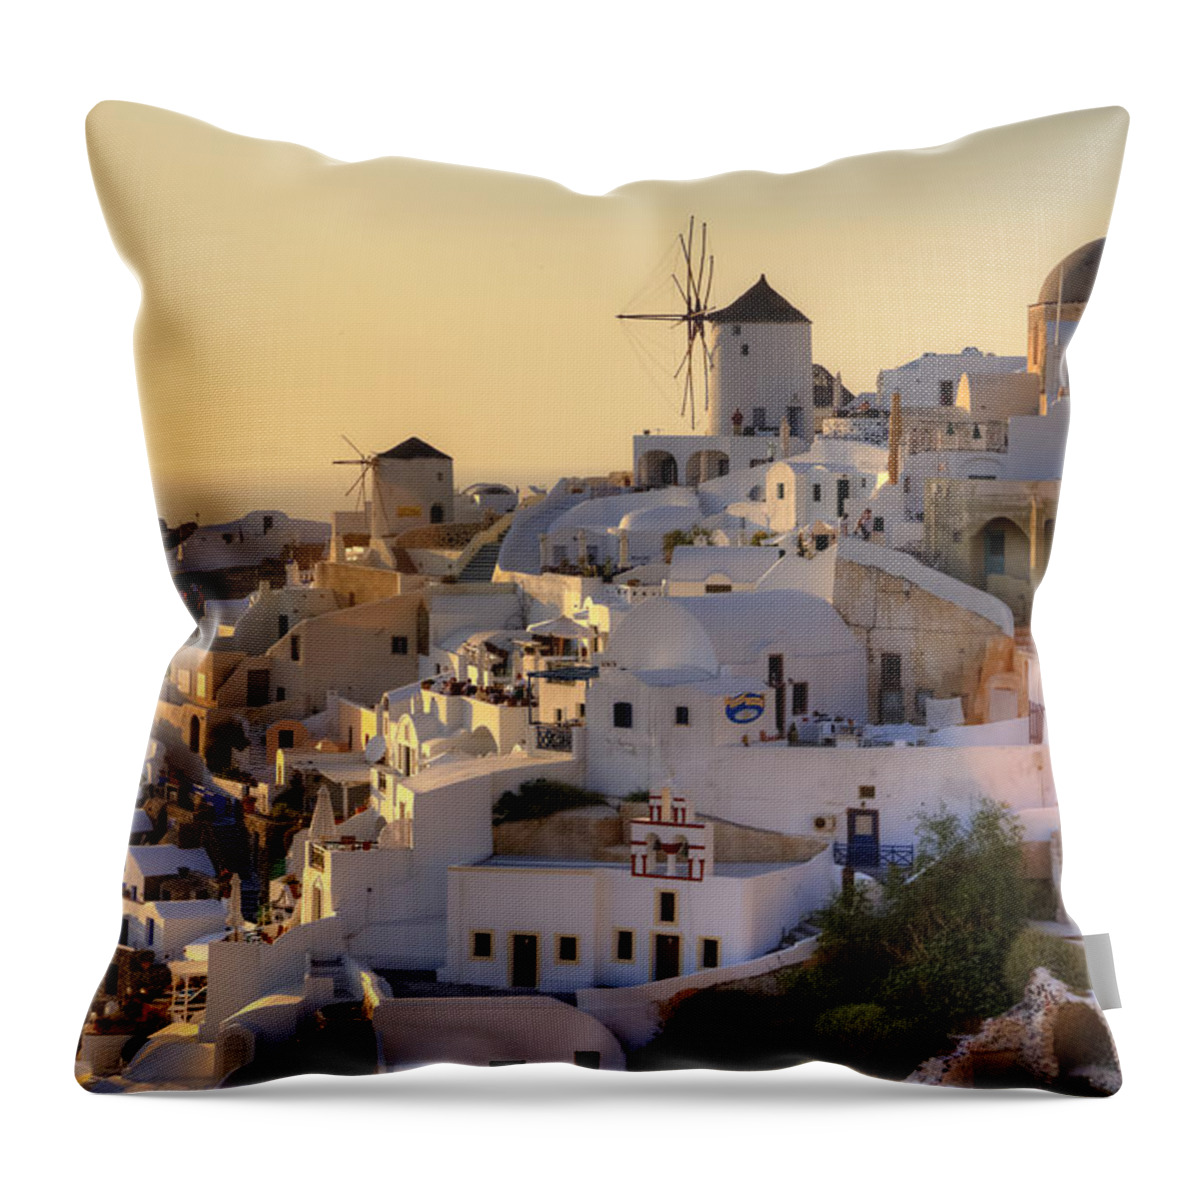 Oia Throw Pillow featuring the photograph Oia - Santorini #12 by Joana Kruse